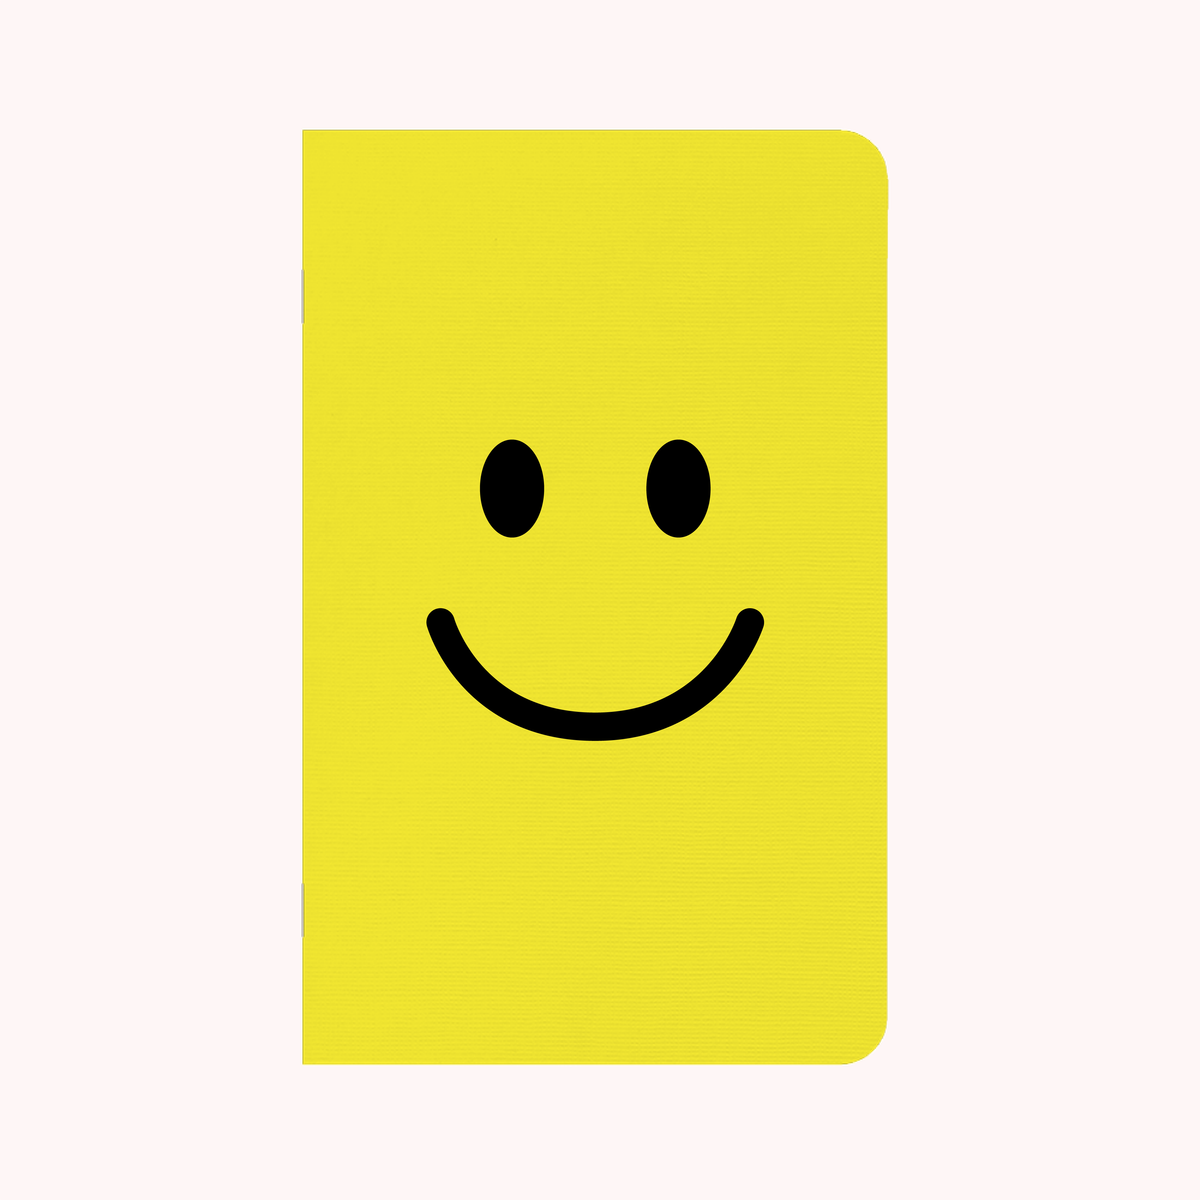 Big Smiley – May Designs